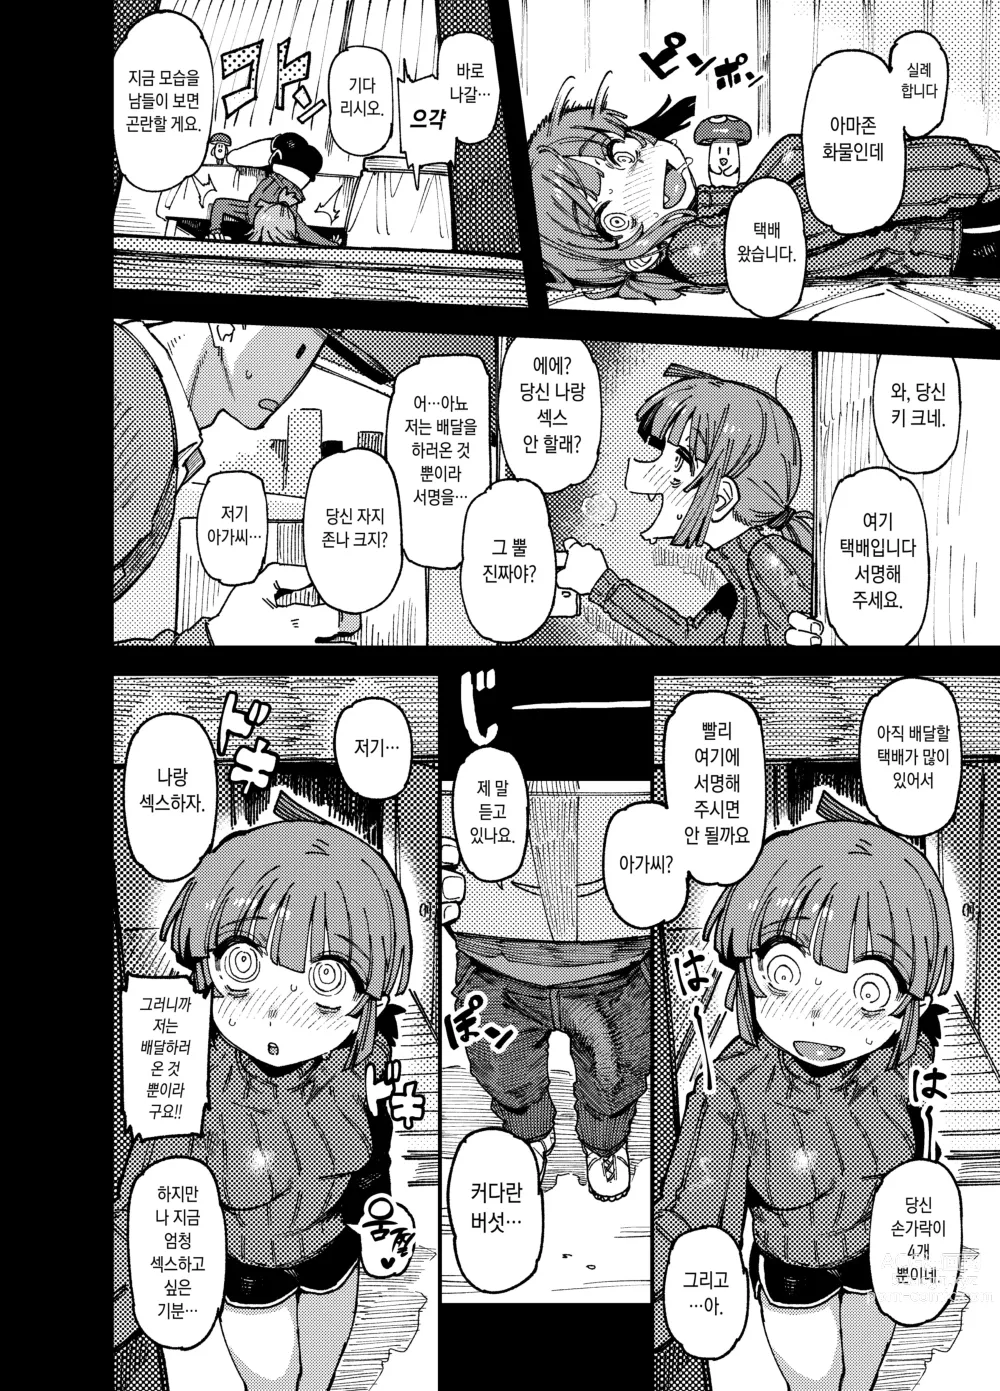 Page 9 of doujinshi 집이 너무 습해서 생긴 환각을 유발하는 버섯을 잘못 먹고 발정난 뒤의 이야기